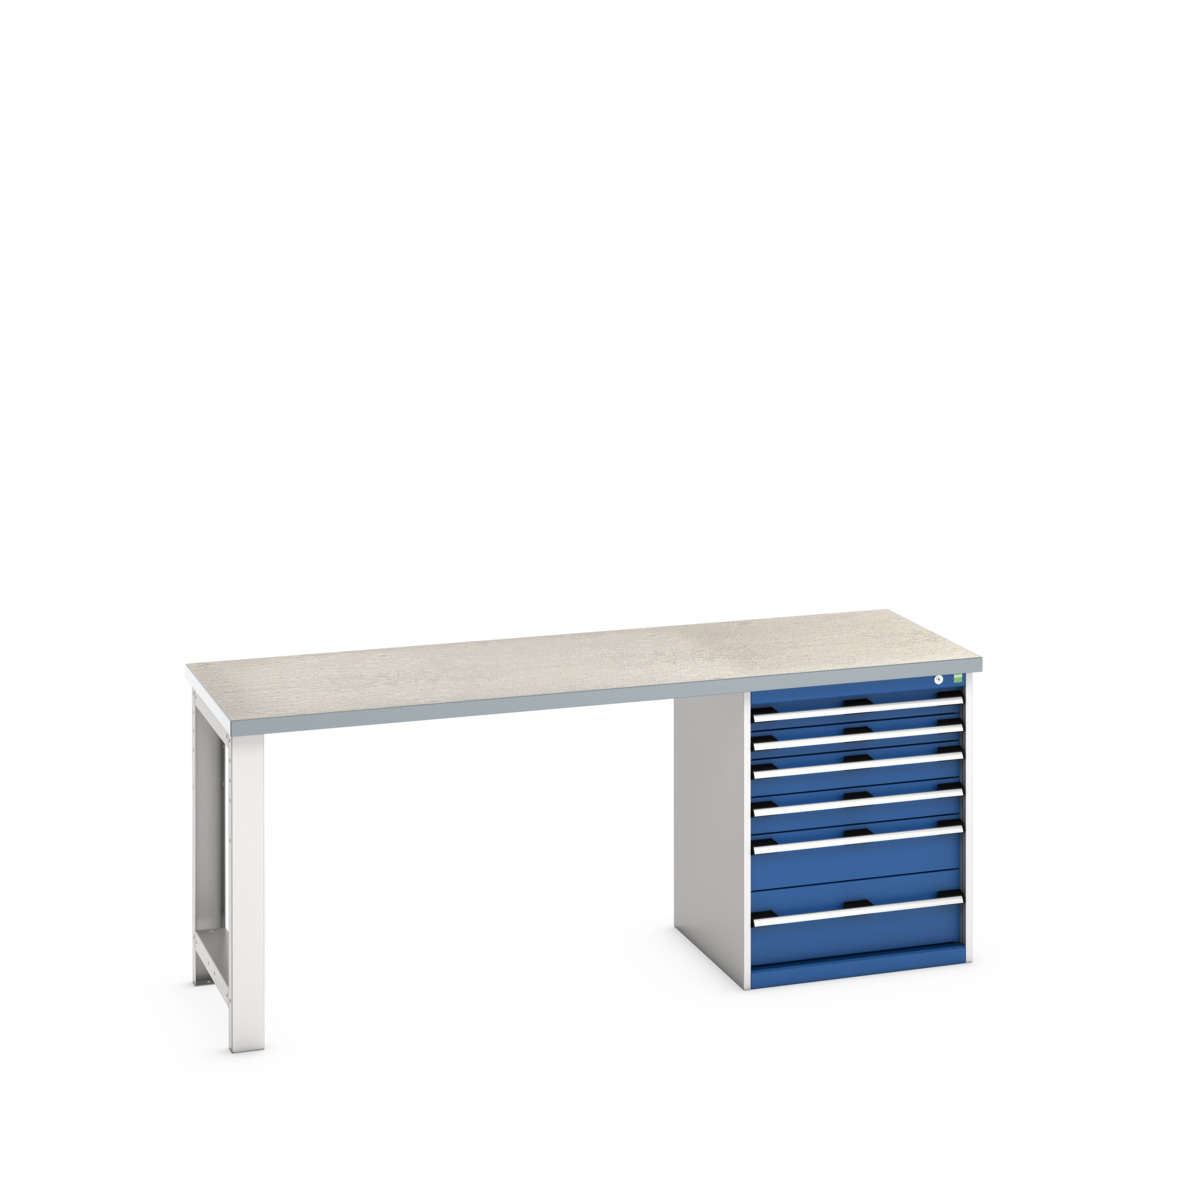 41003237.11V - cubio pedestal bench (lino)